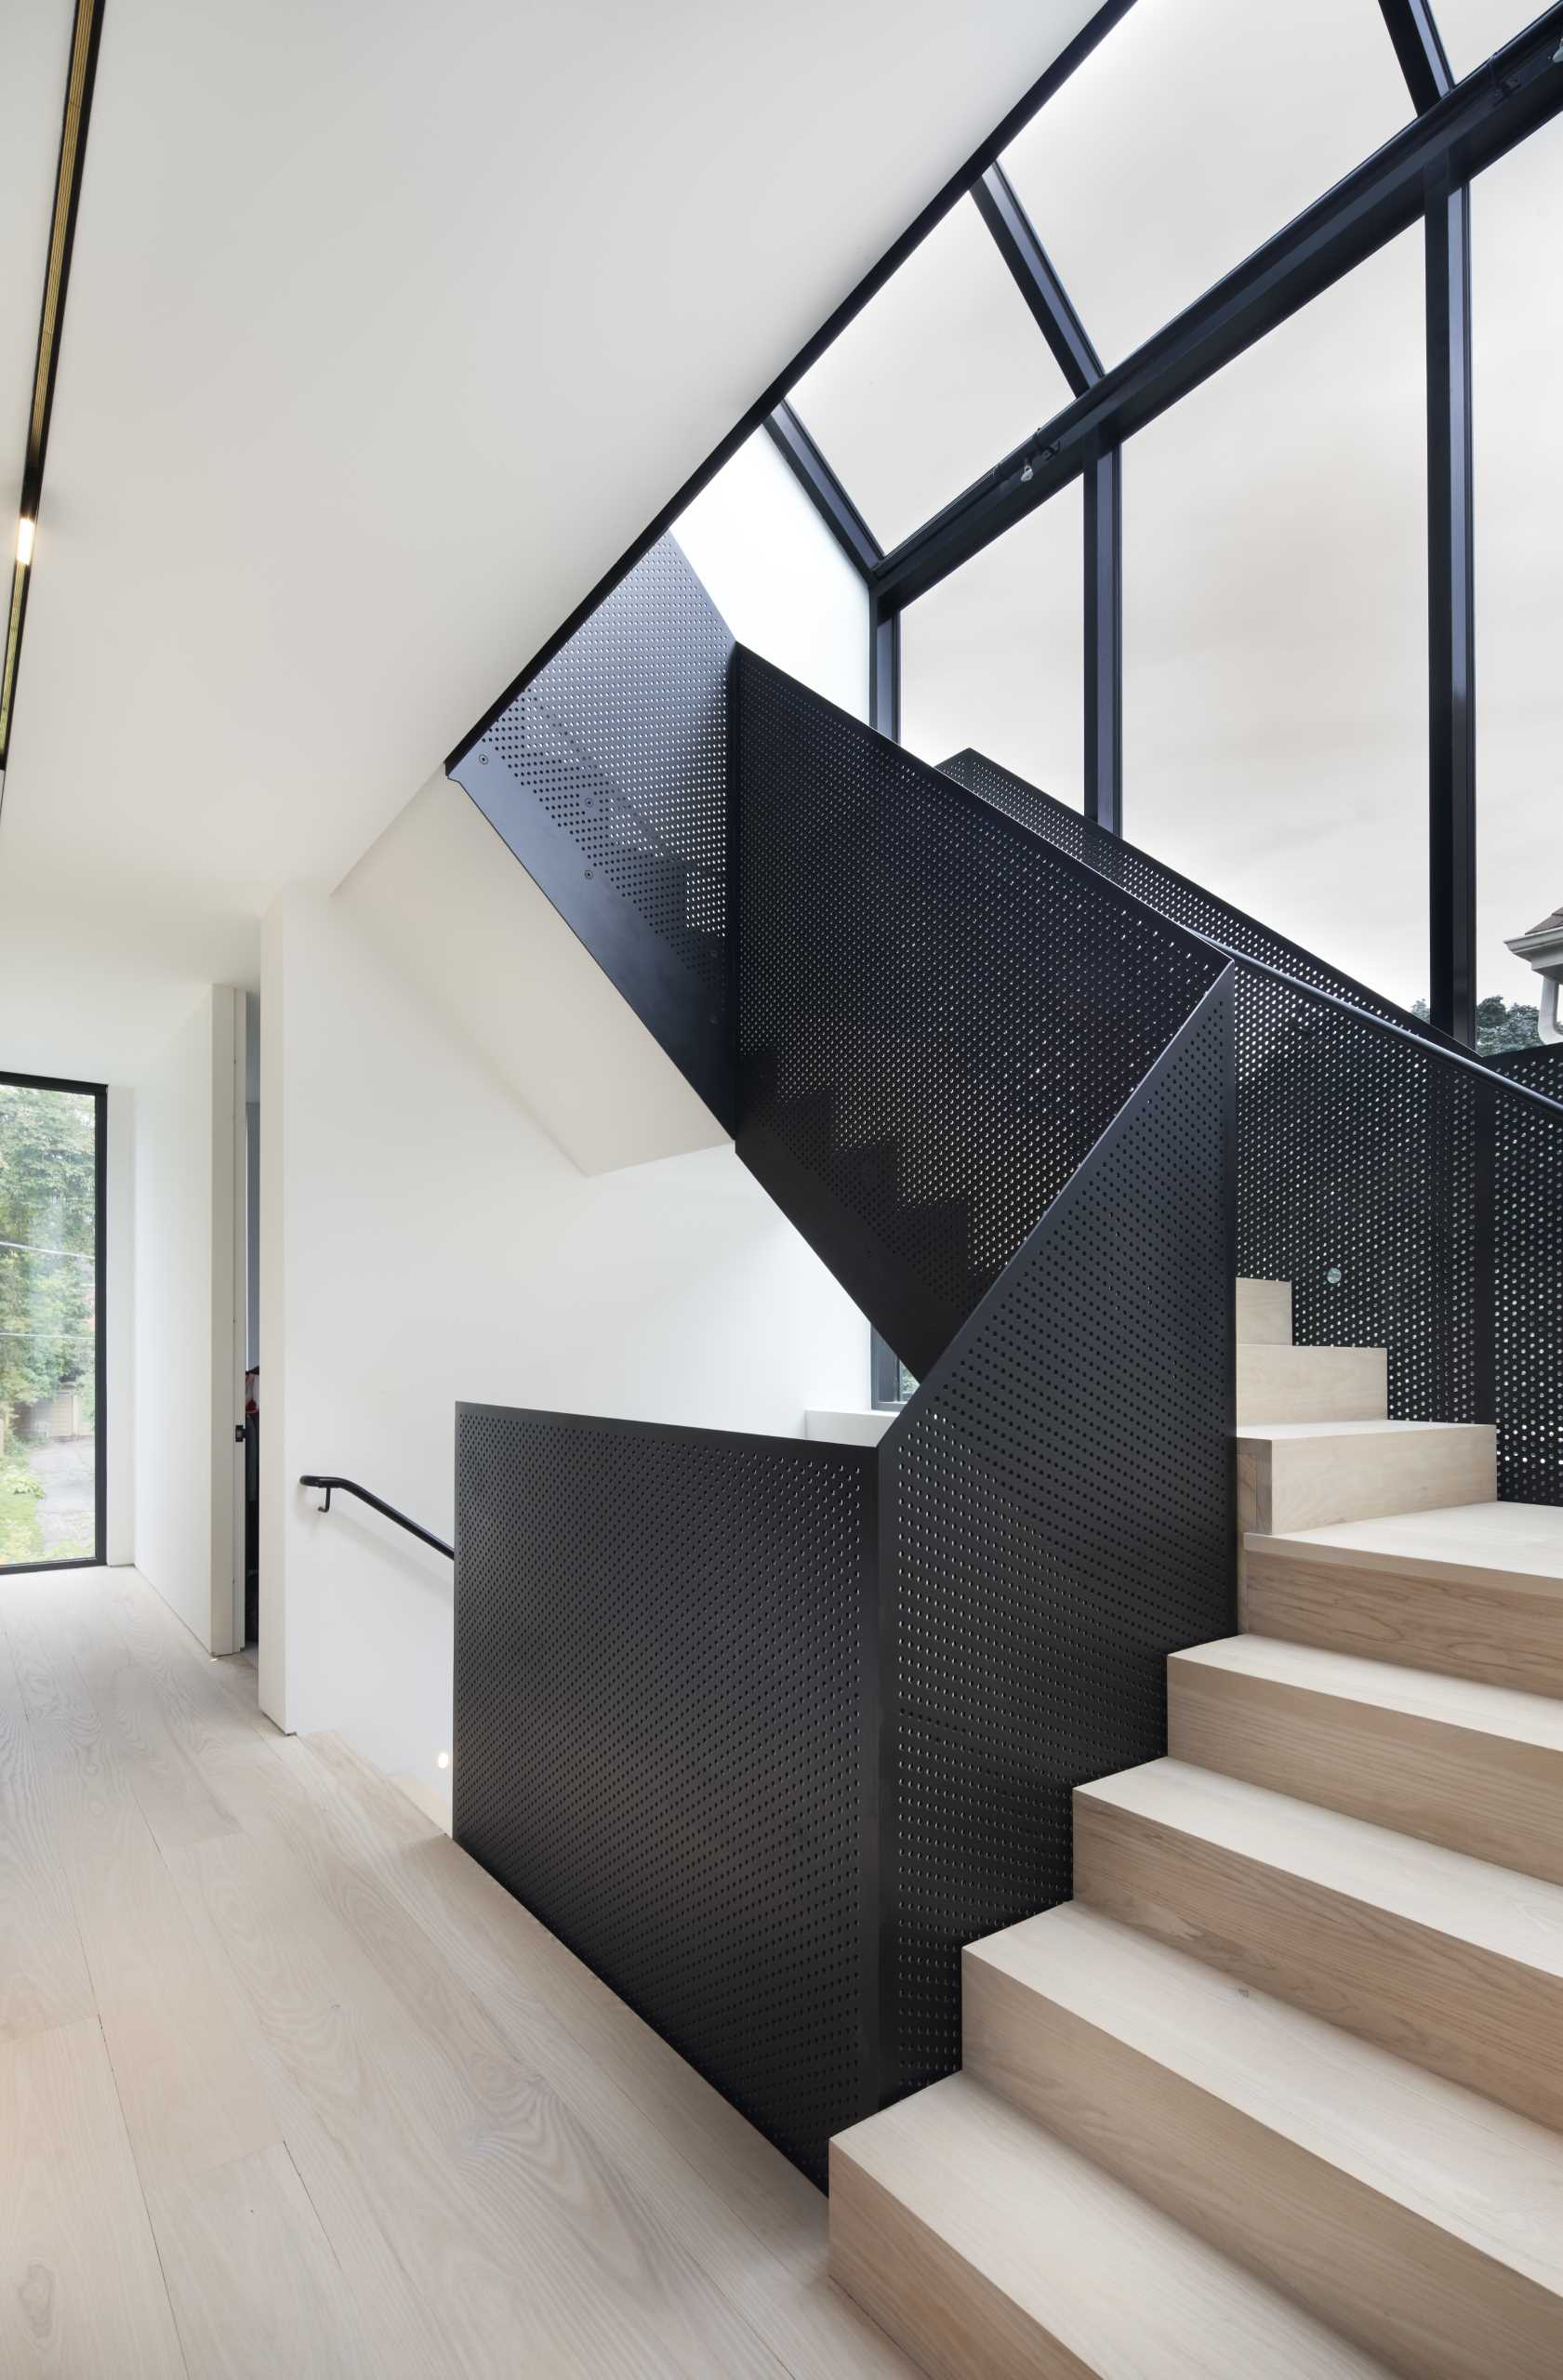 Деревянная лестница с перфорированными черными металлическими перилами соединяет несколько уровней дома.